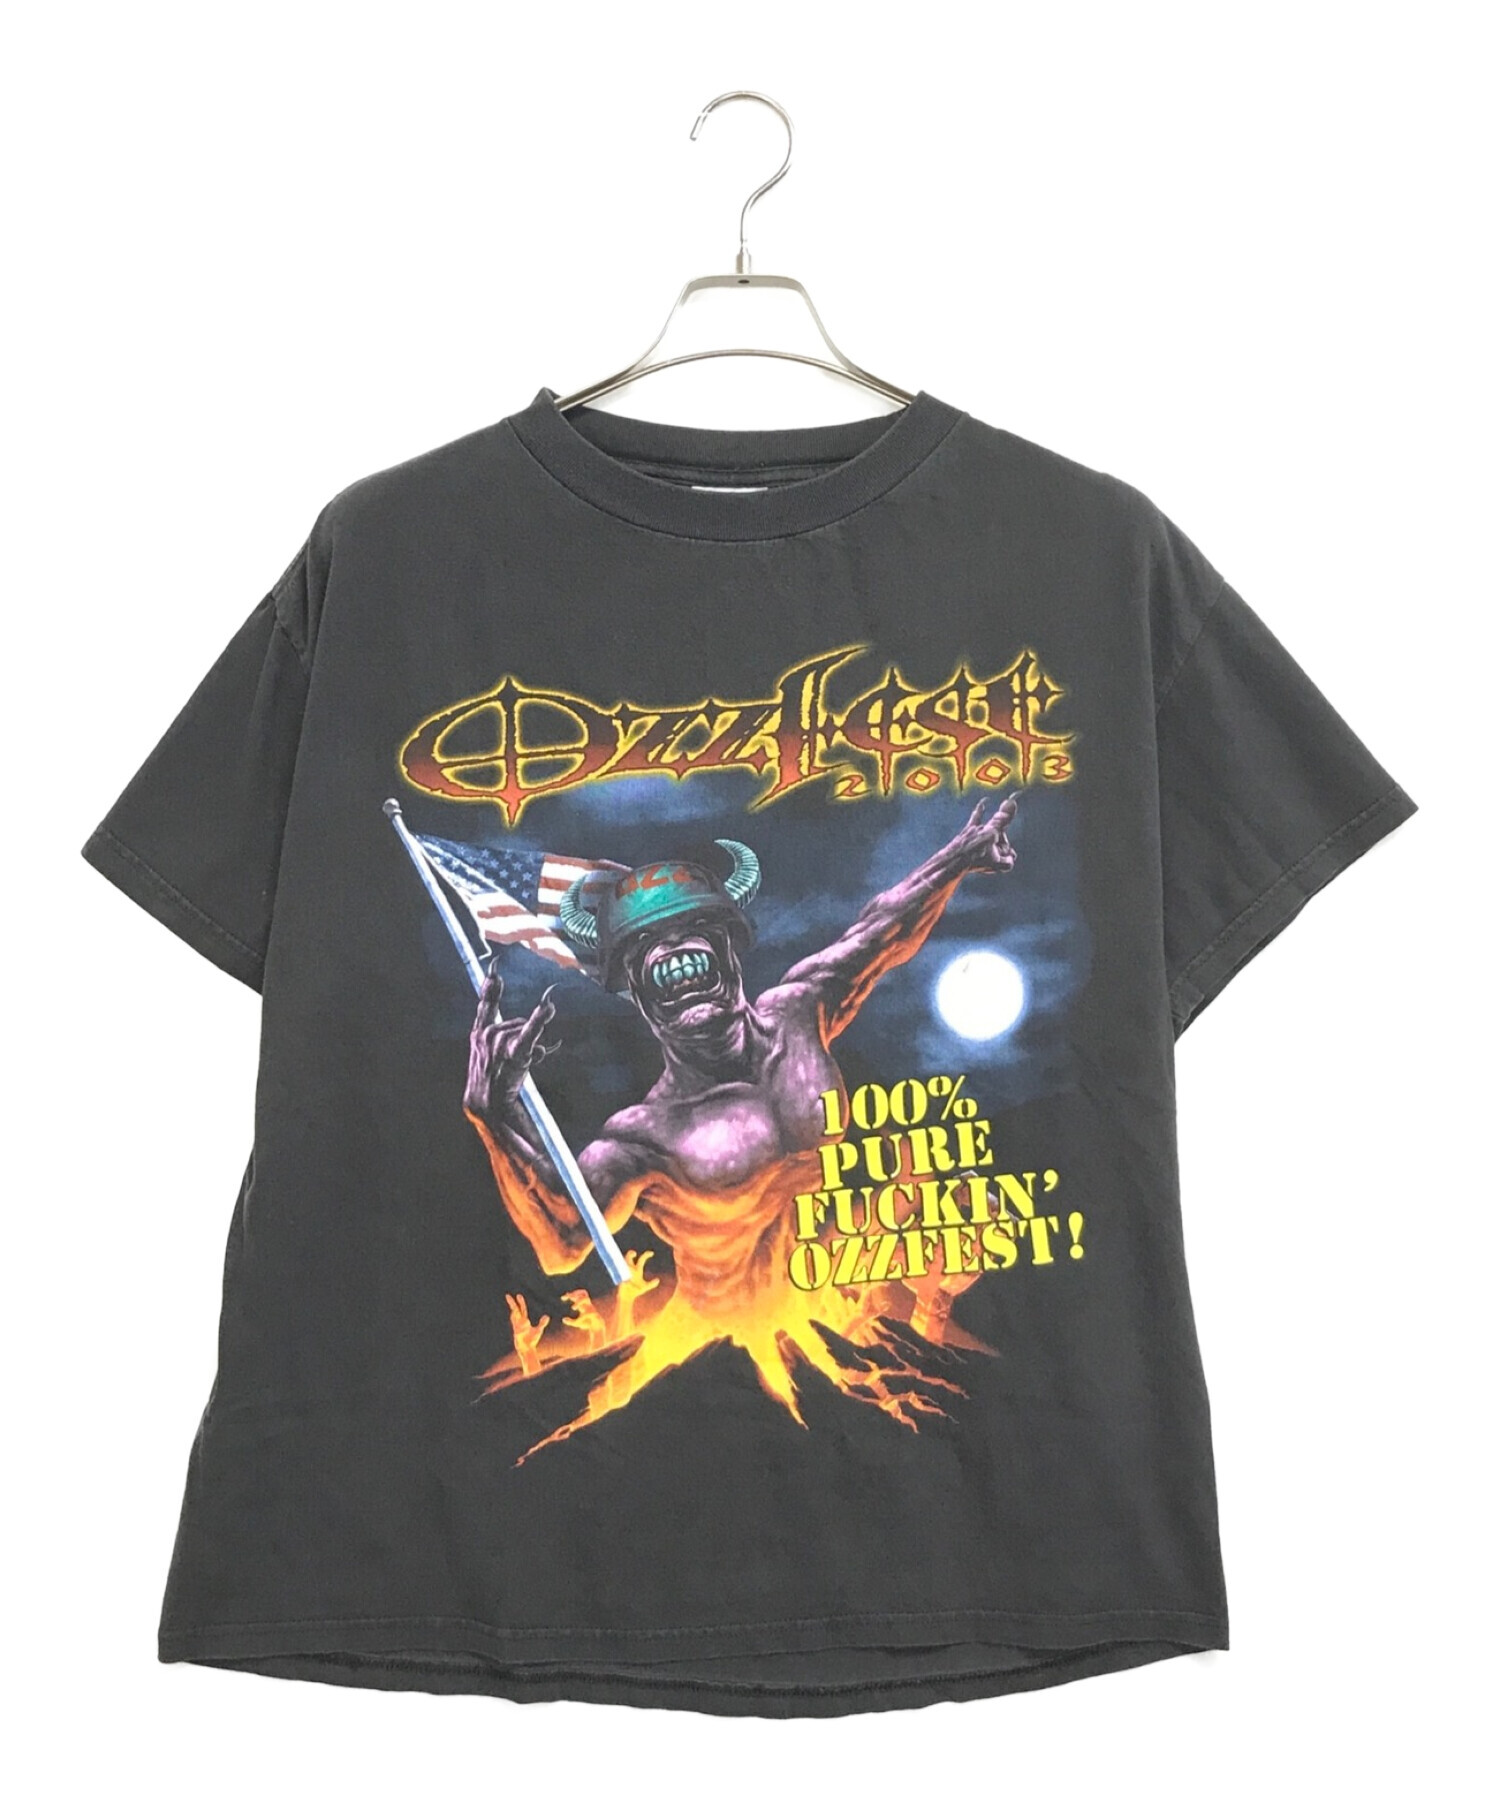 激レア Ozzfest オズフェスト 2003年製ヴィンテージ Tシャツ